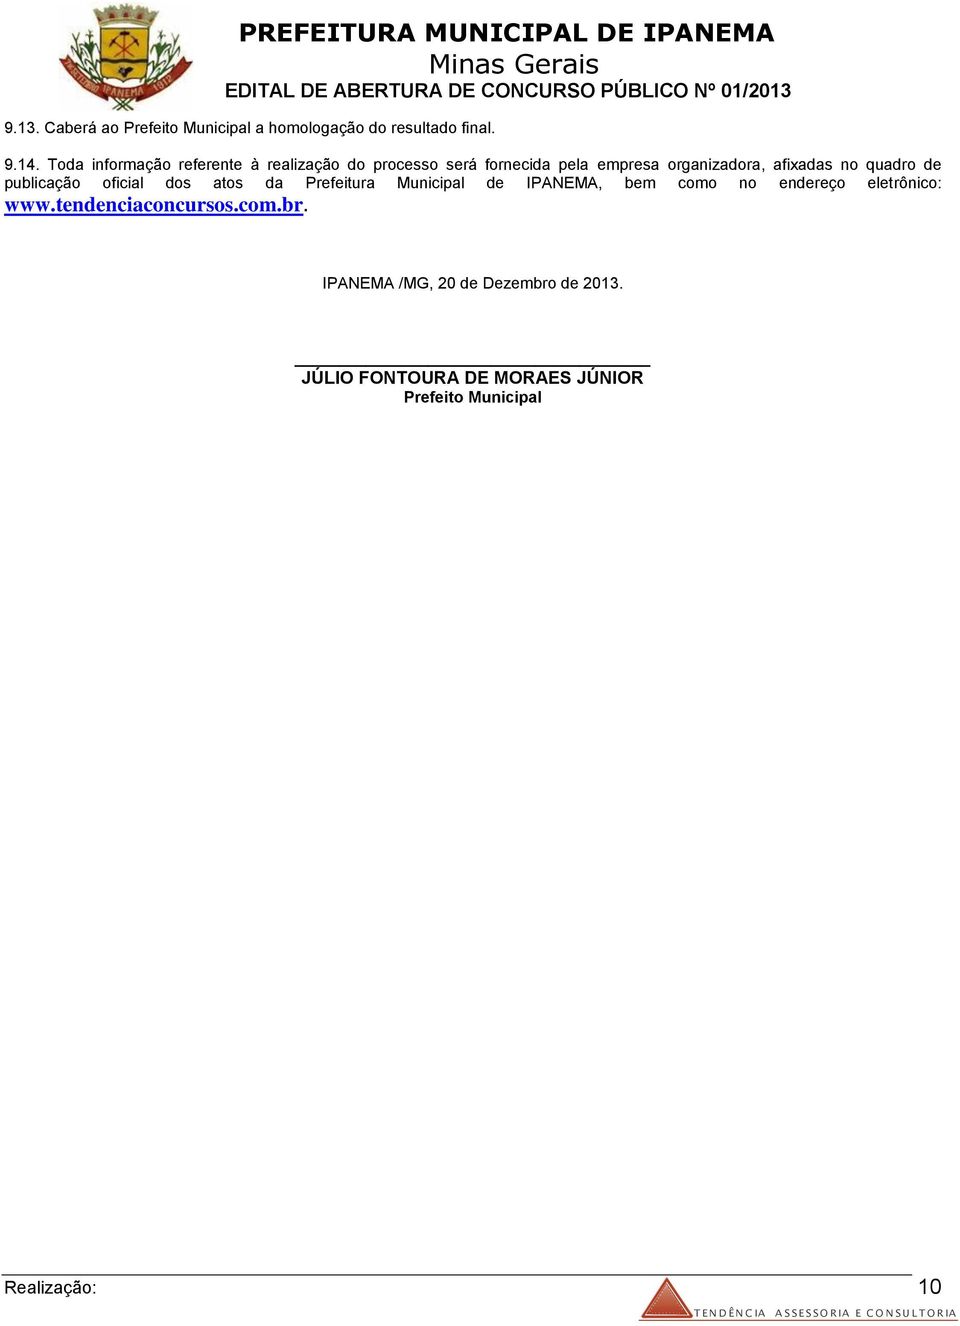 quadro de publicação oficial dos atos da Prefeitura Municipal de IPANEMA, bem como no endereço